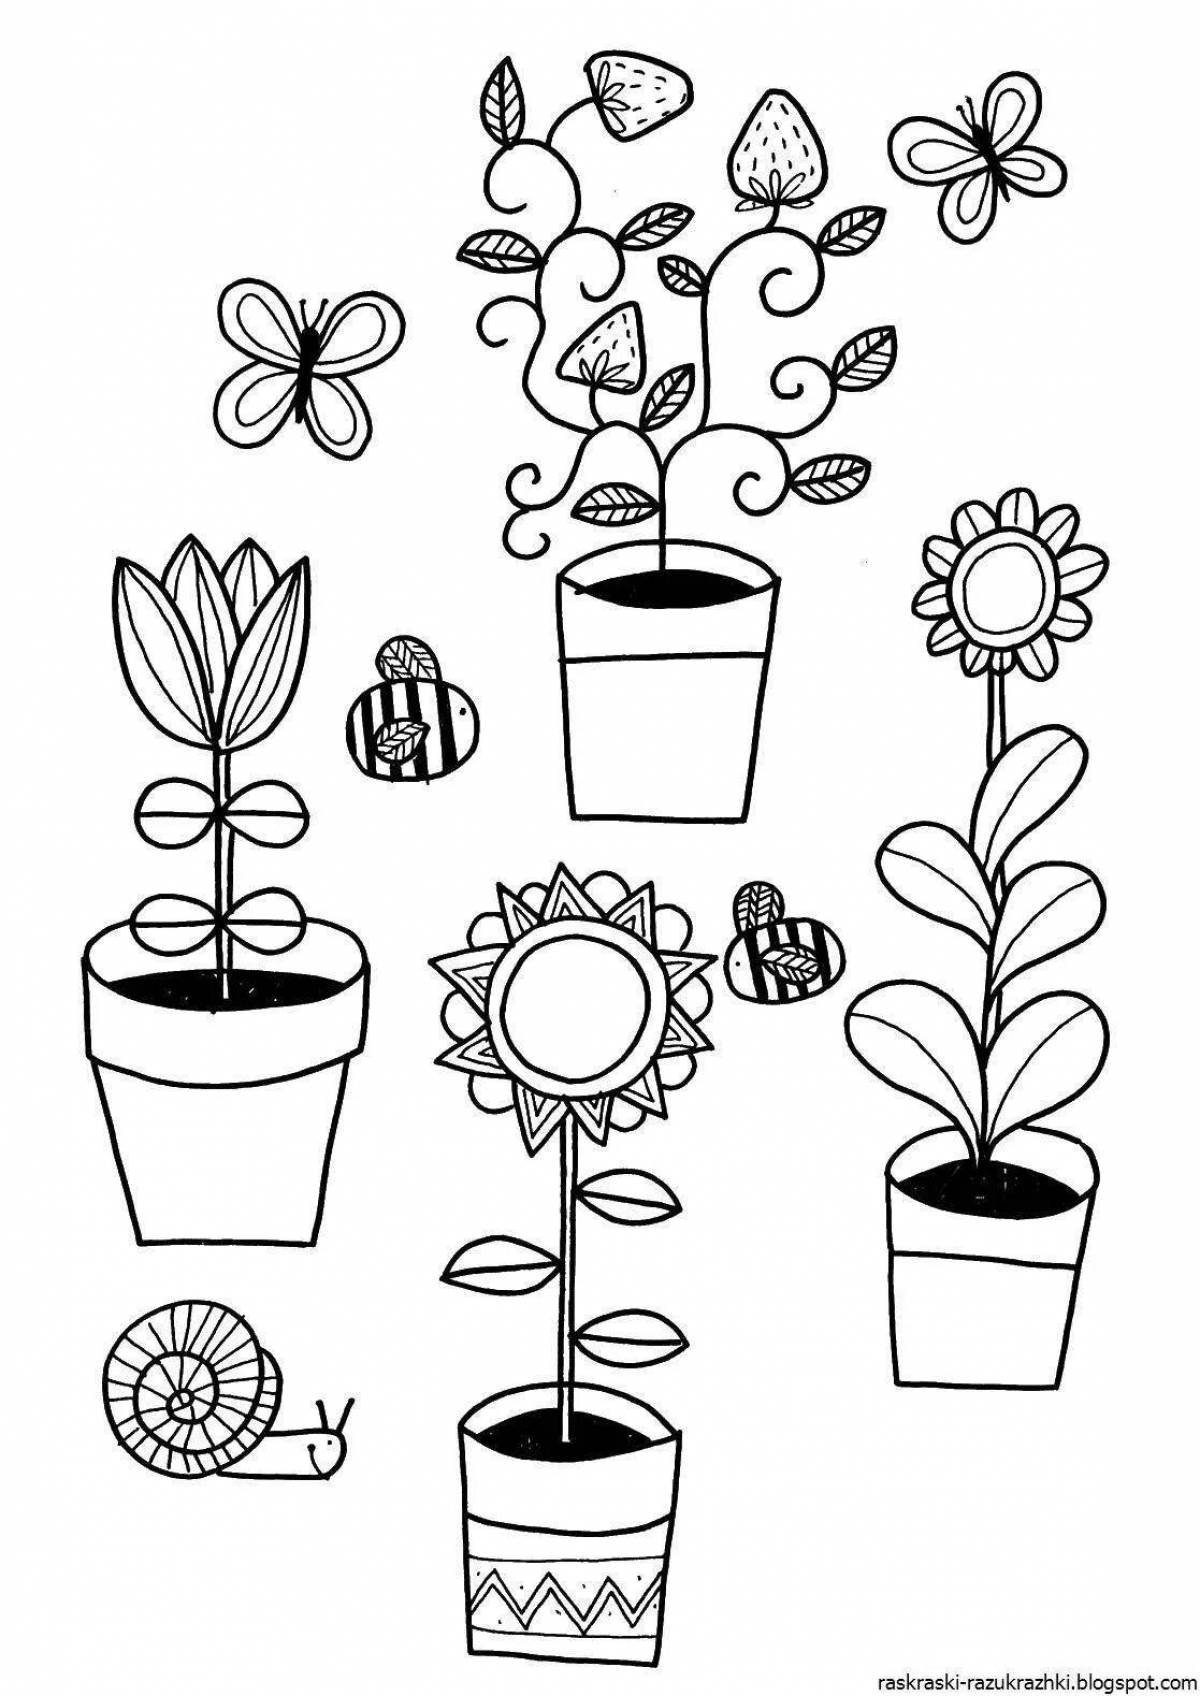 Креативная раскраска комнатных растений для дошкольников